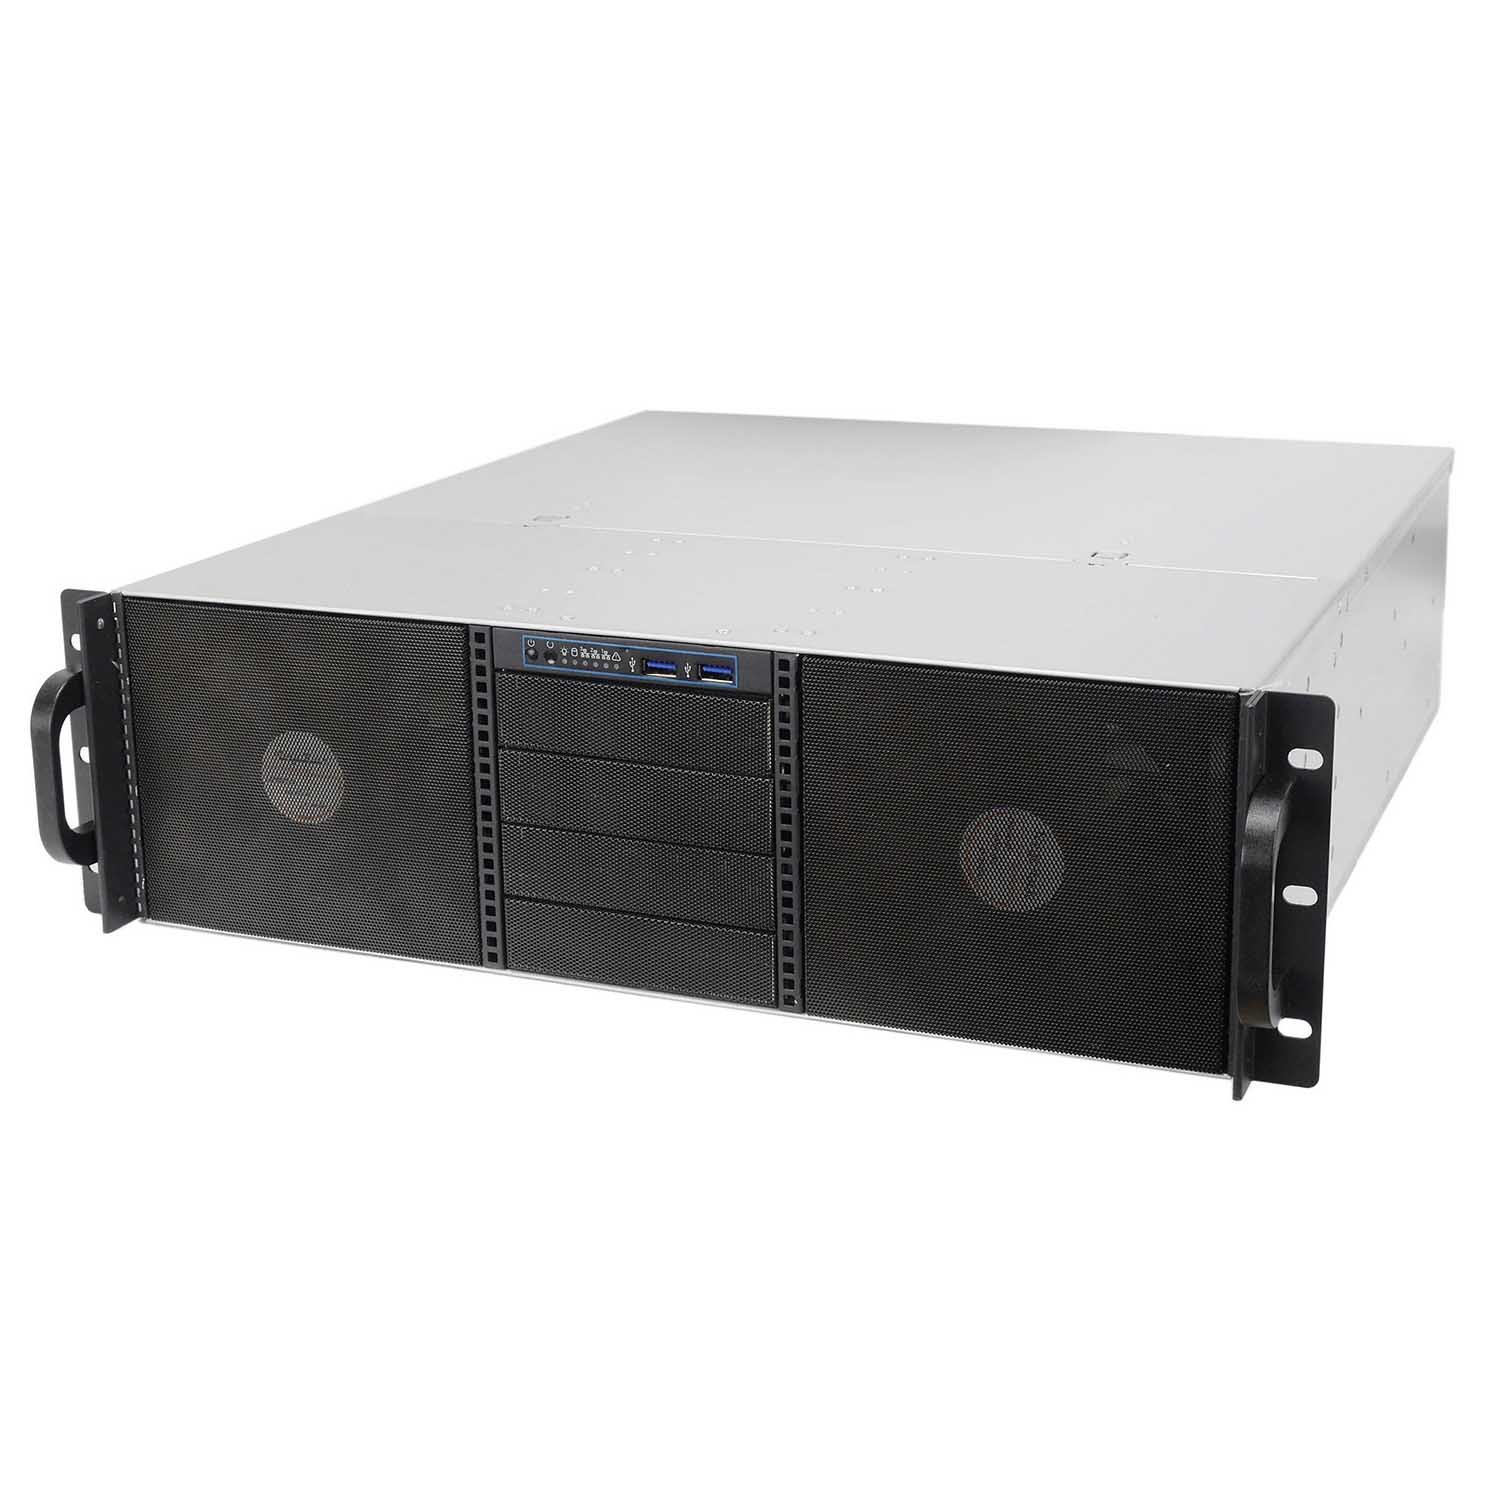 Серверный корпус 3U NR-N3013 850Вт (EATX 12x13, 6x5.25ext(10x3.5int),4x3.5ext, 480мм)черный,NegoRack